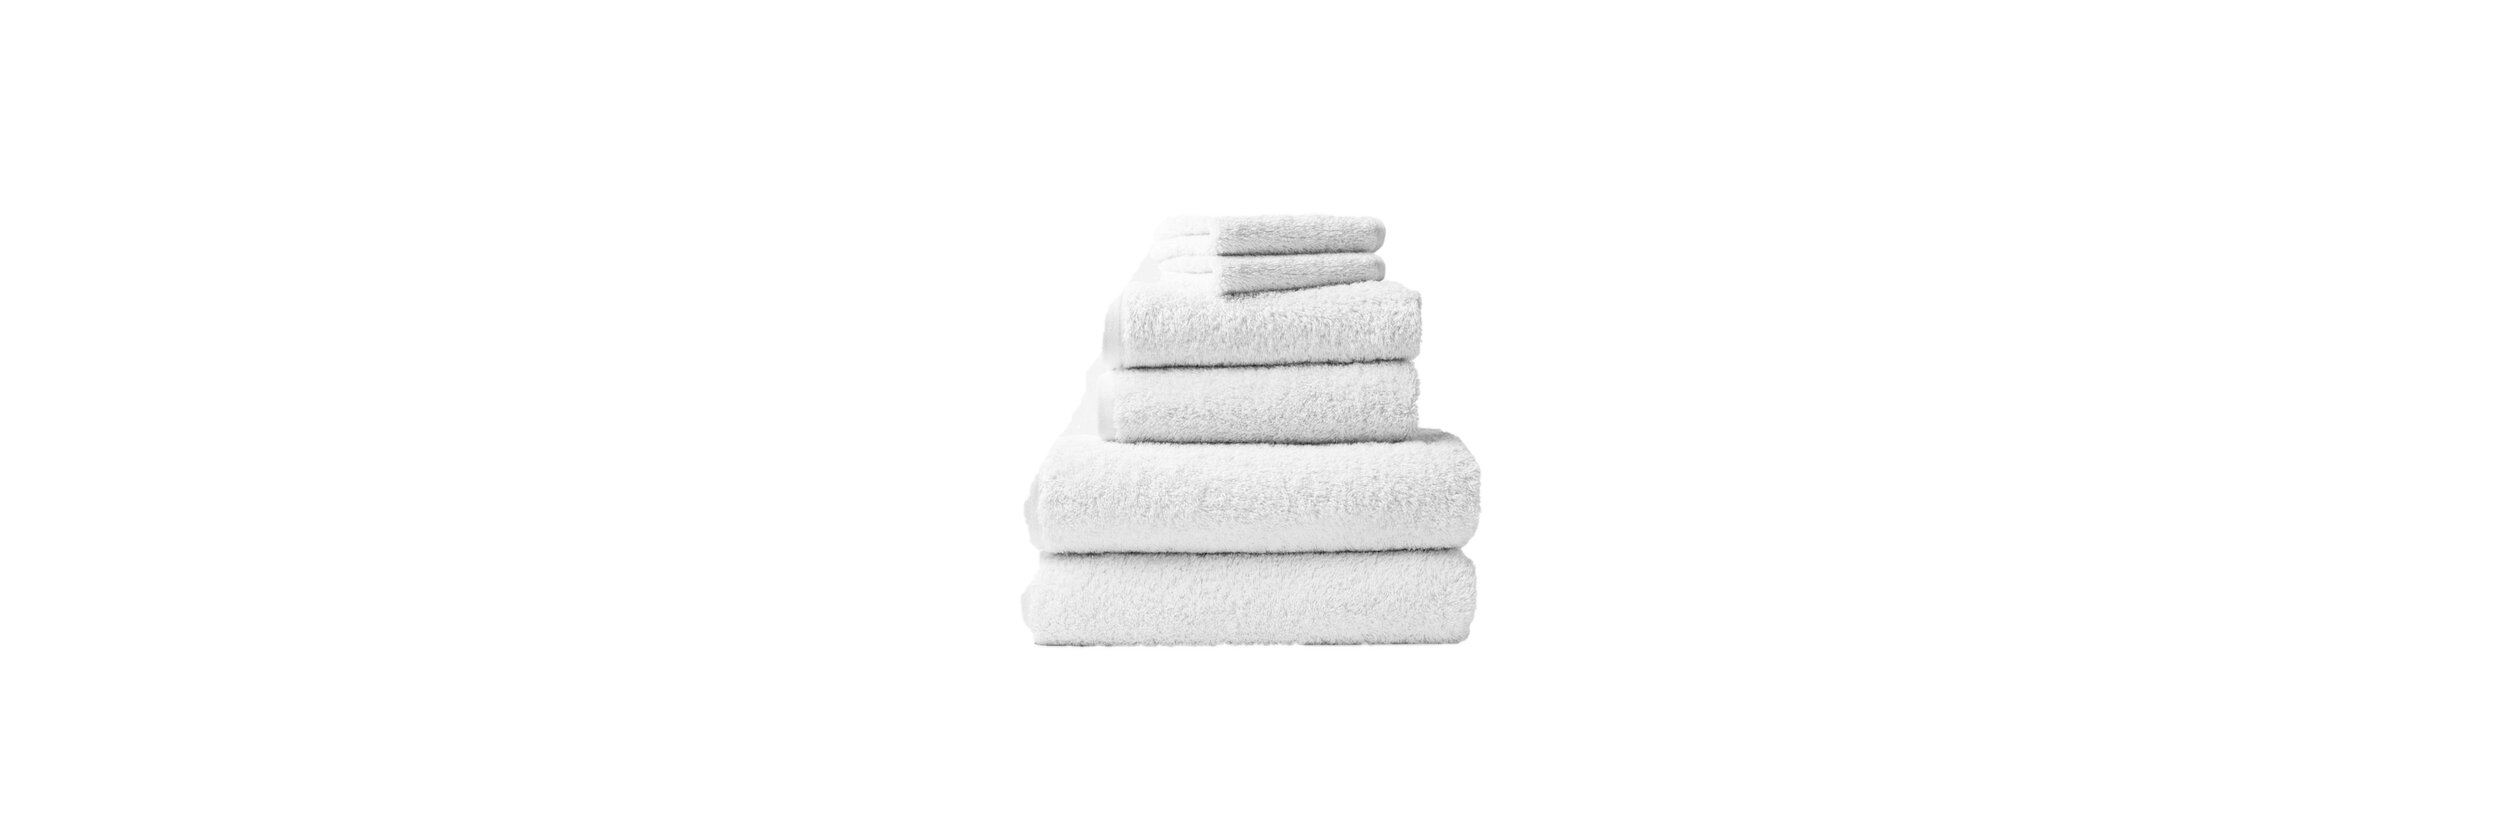 White Towels.jpg